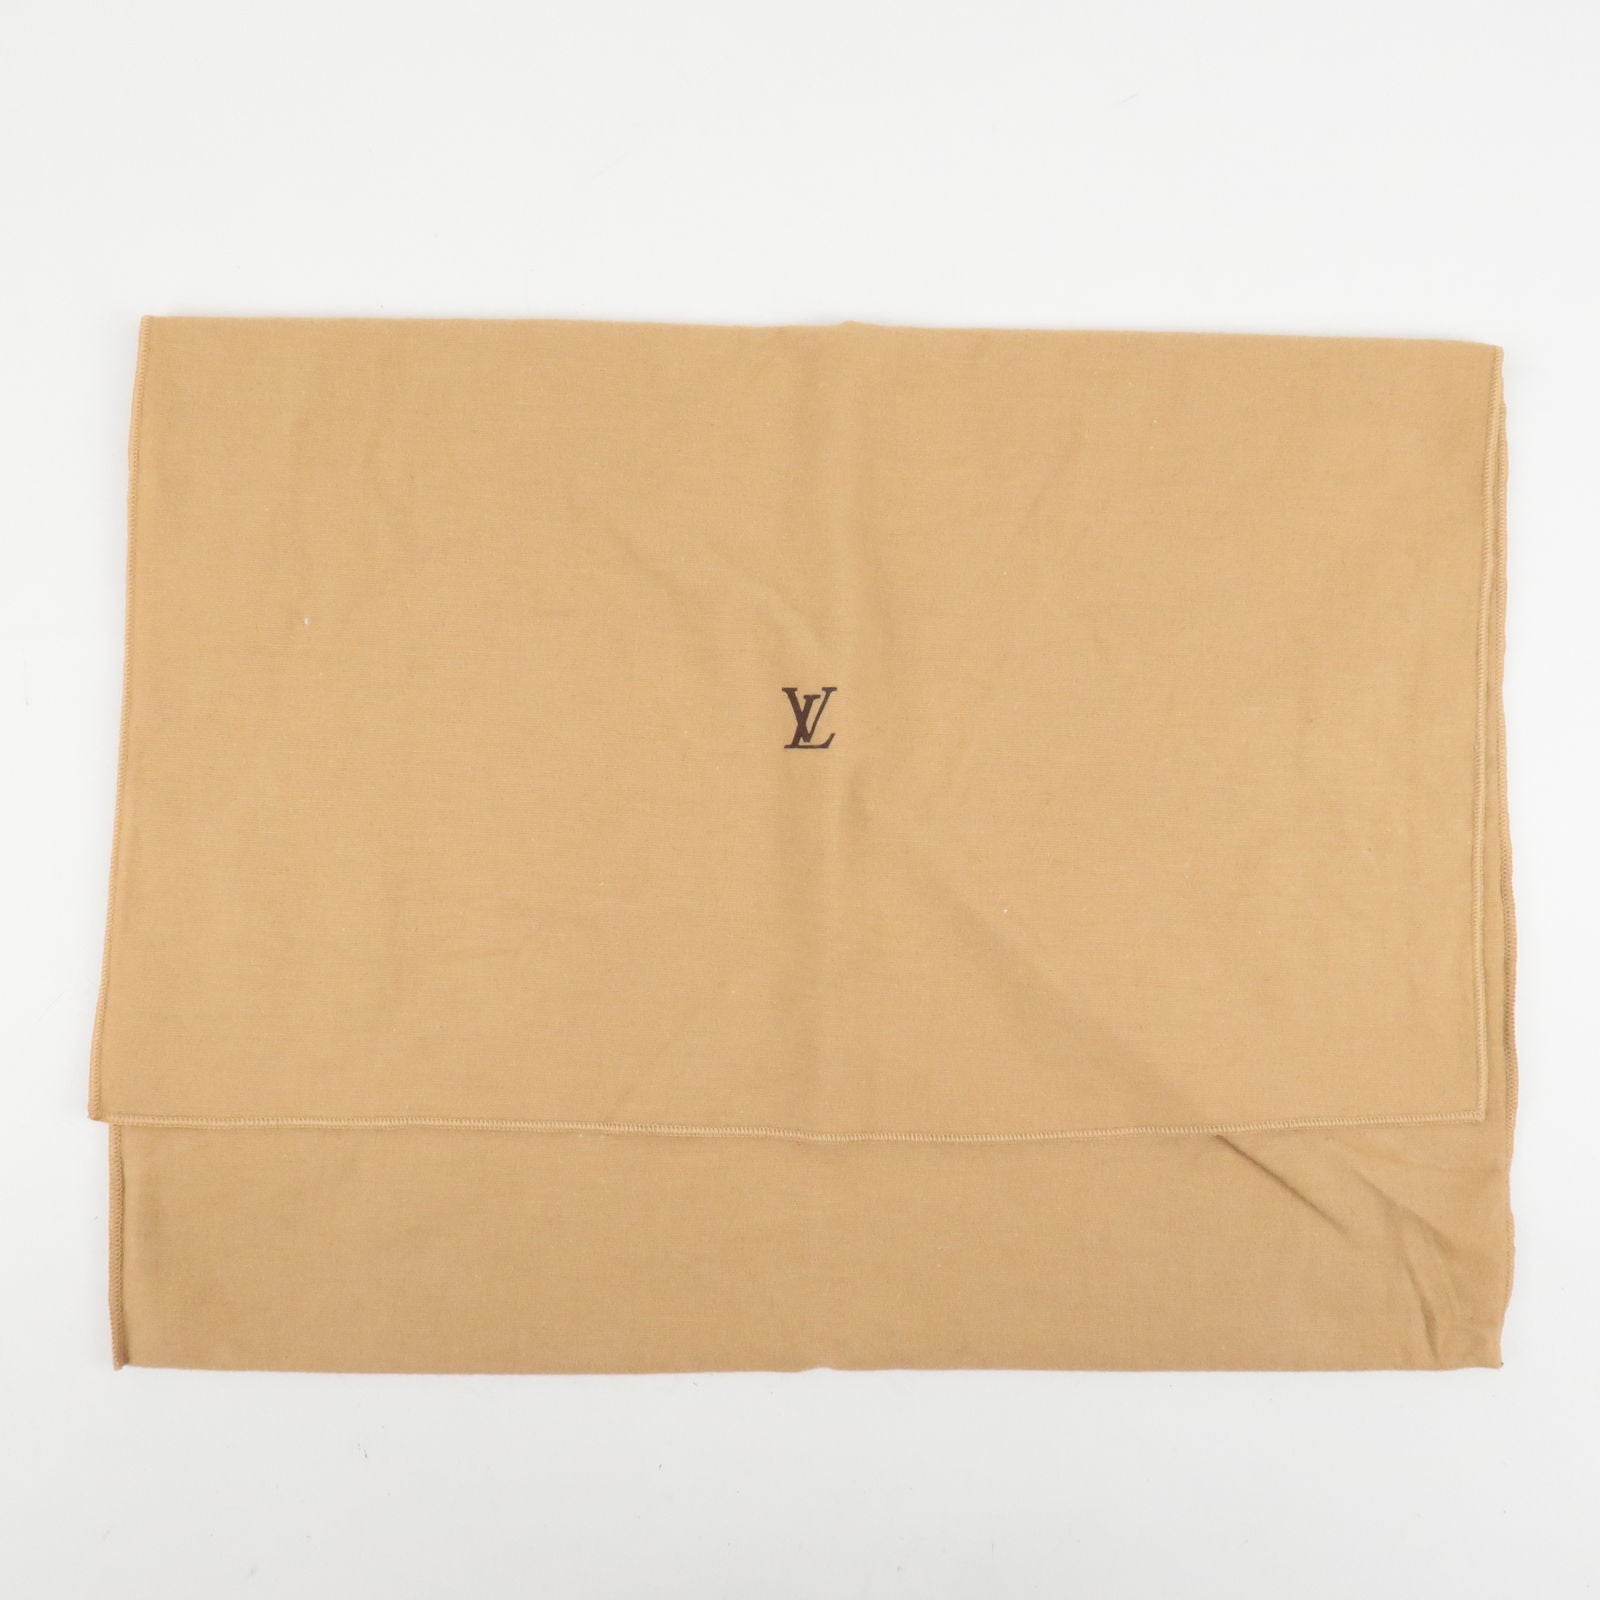 Louis Vuitton, Accessories, Louis Vuitton Empty Boxes Dust Bags Etc